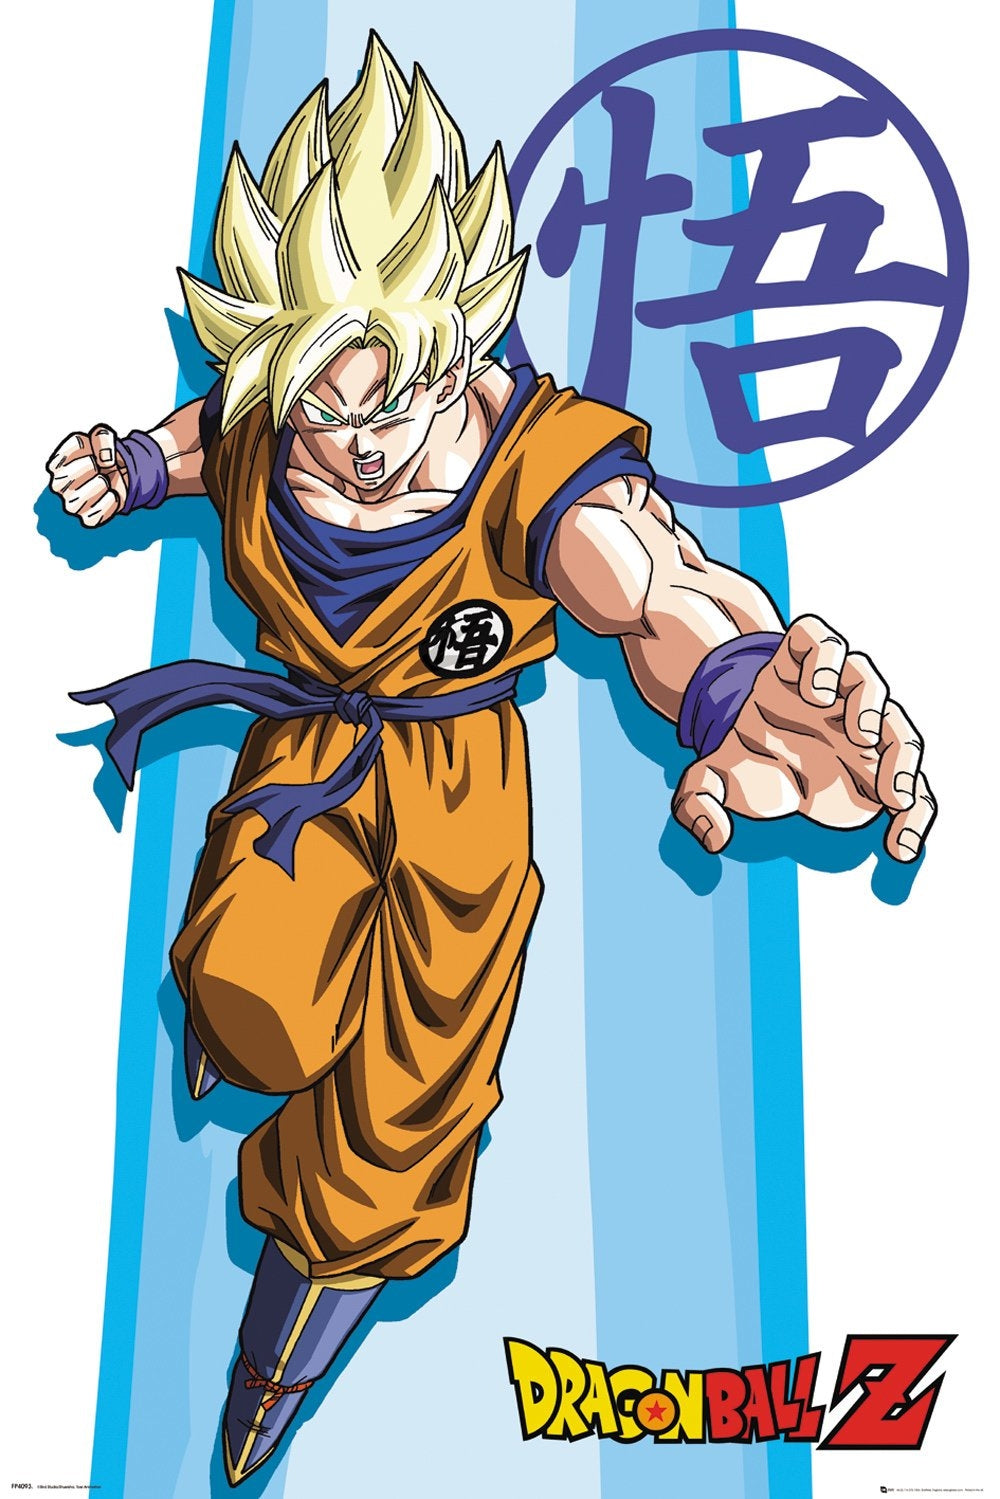 Dragon Ball Z (SS Goku) Poster